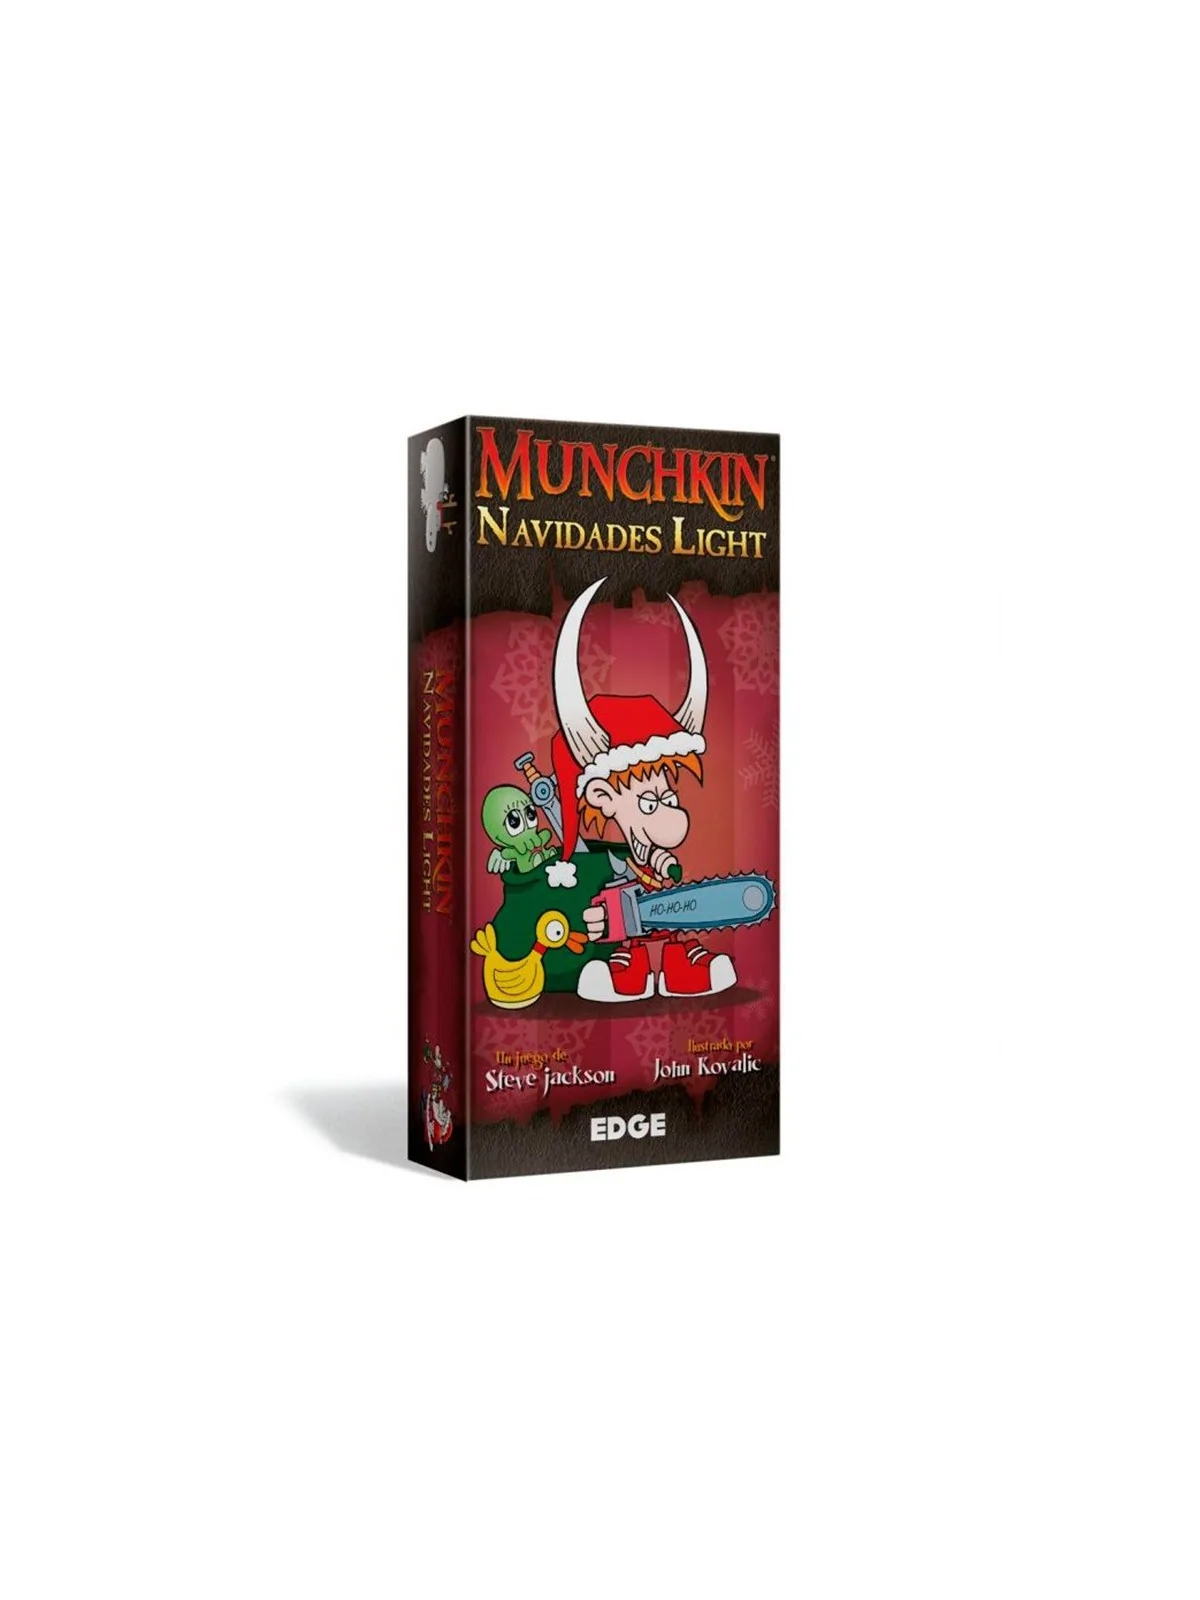 Comprar Munchkin: Navidades Light barato al mejor precio 17,96 € de Ed